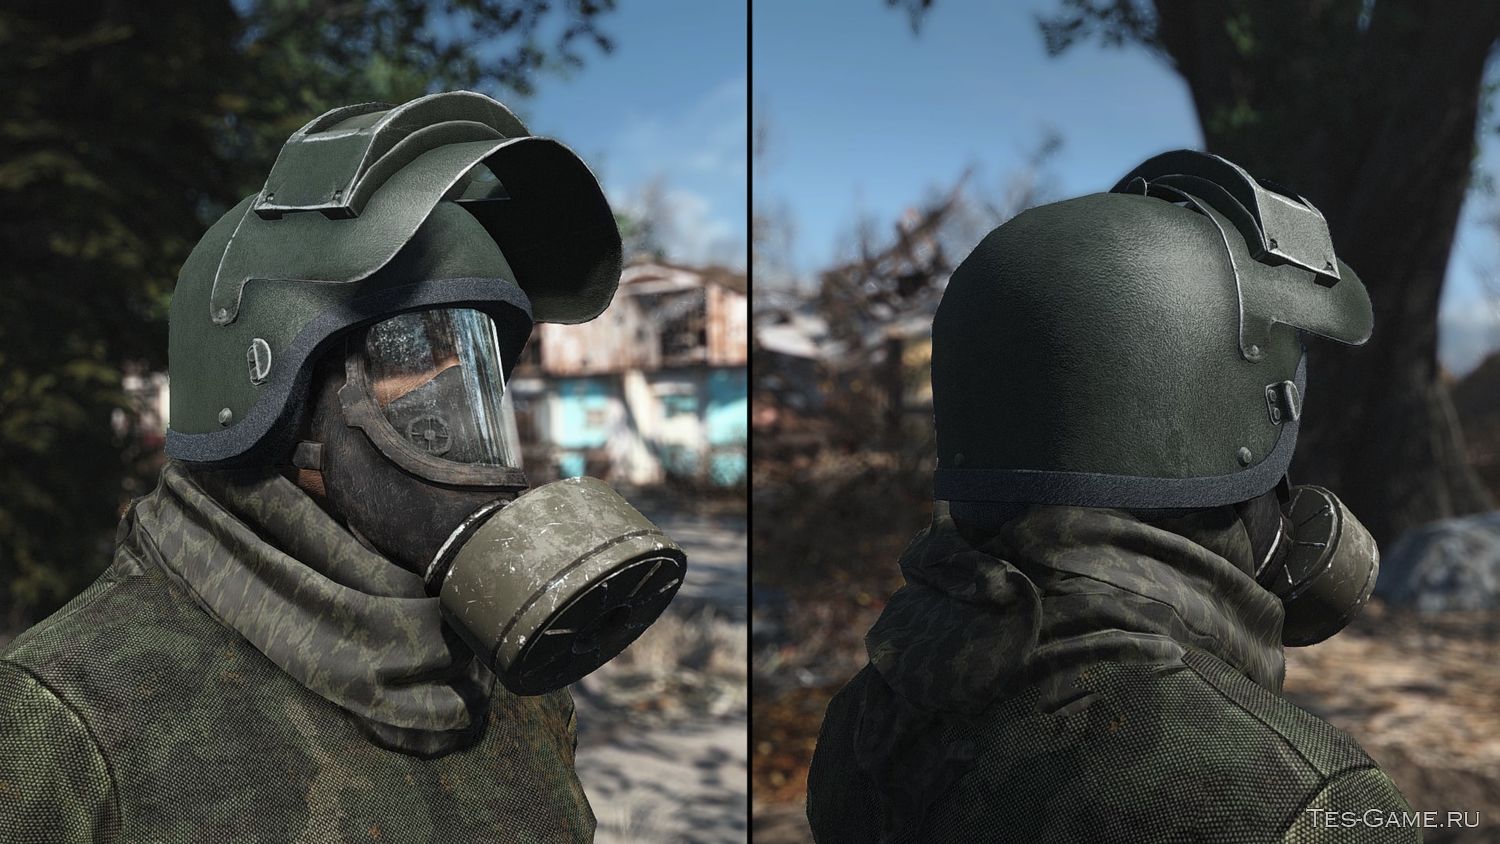 Fallout 4 altyn helmet (120) фото